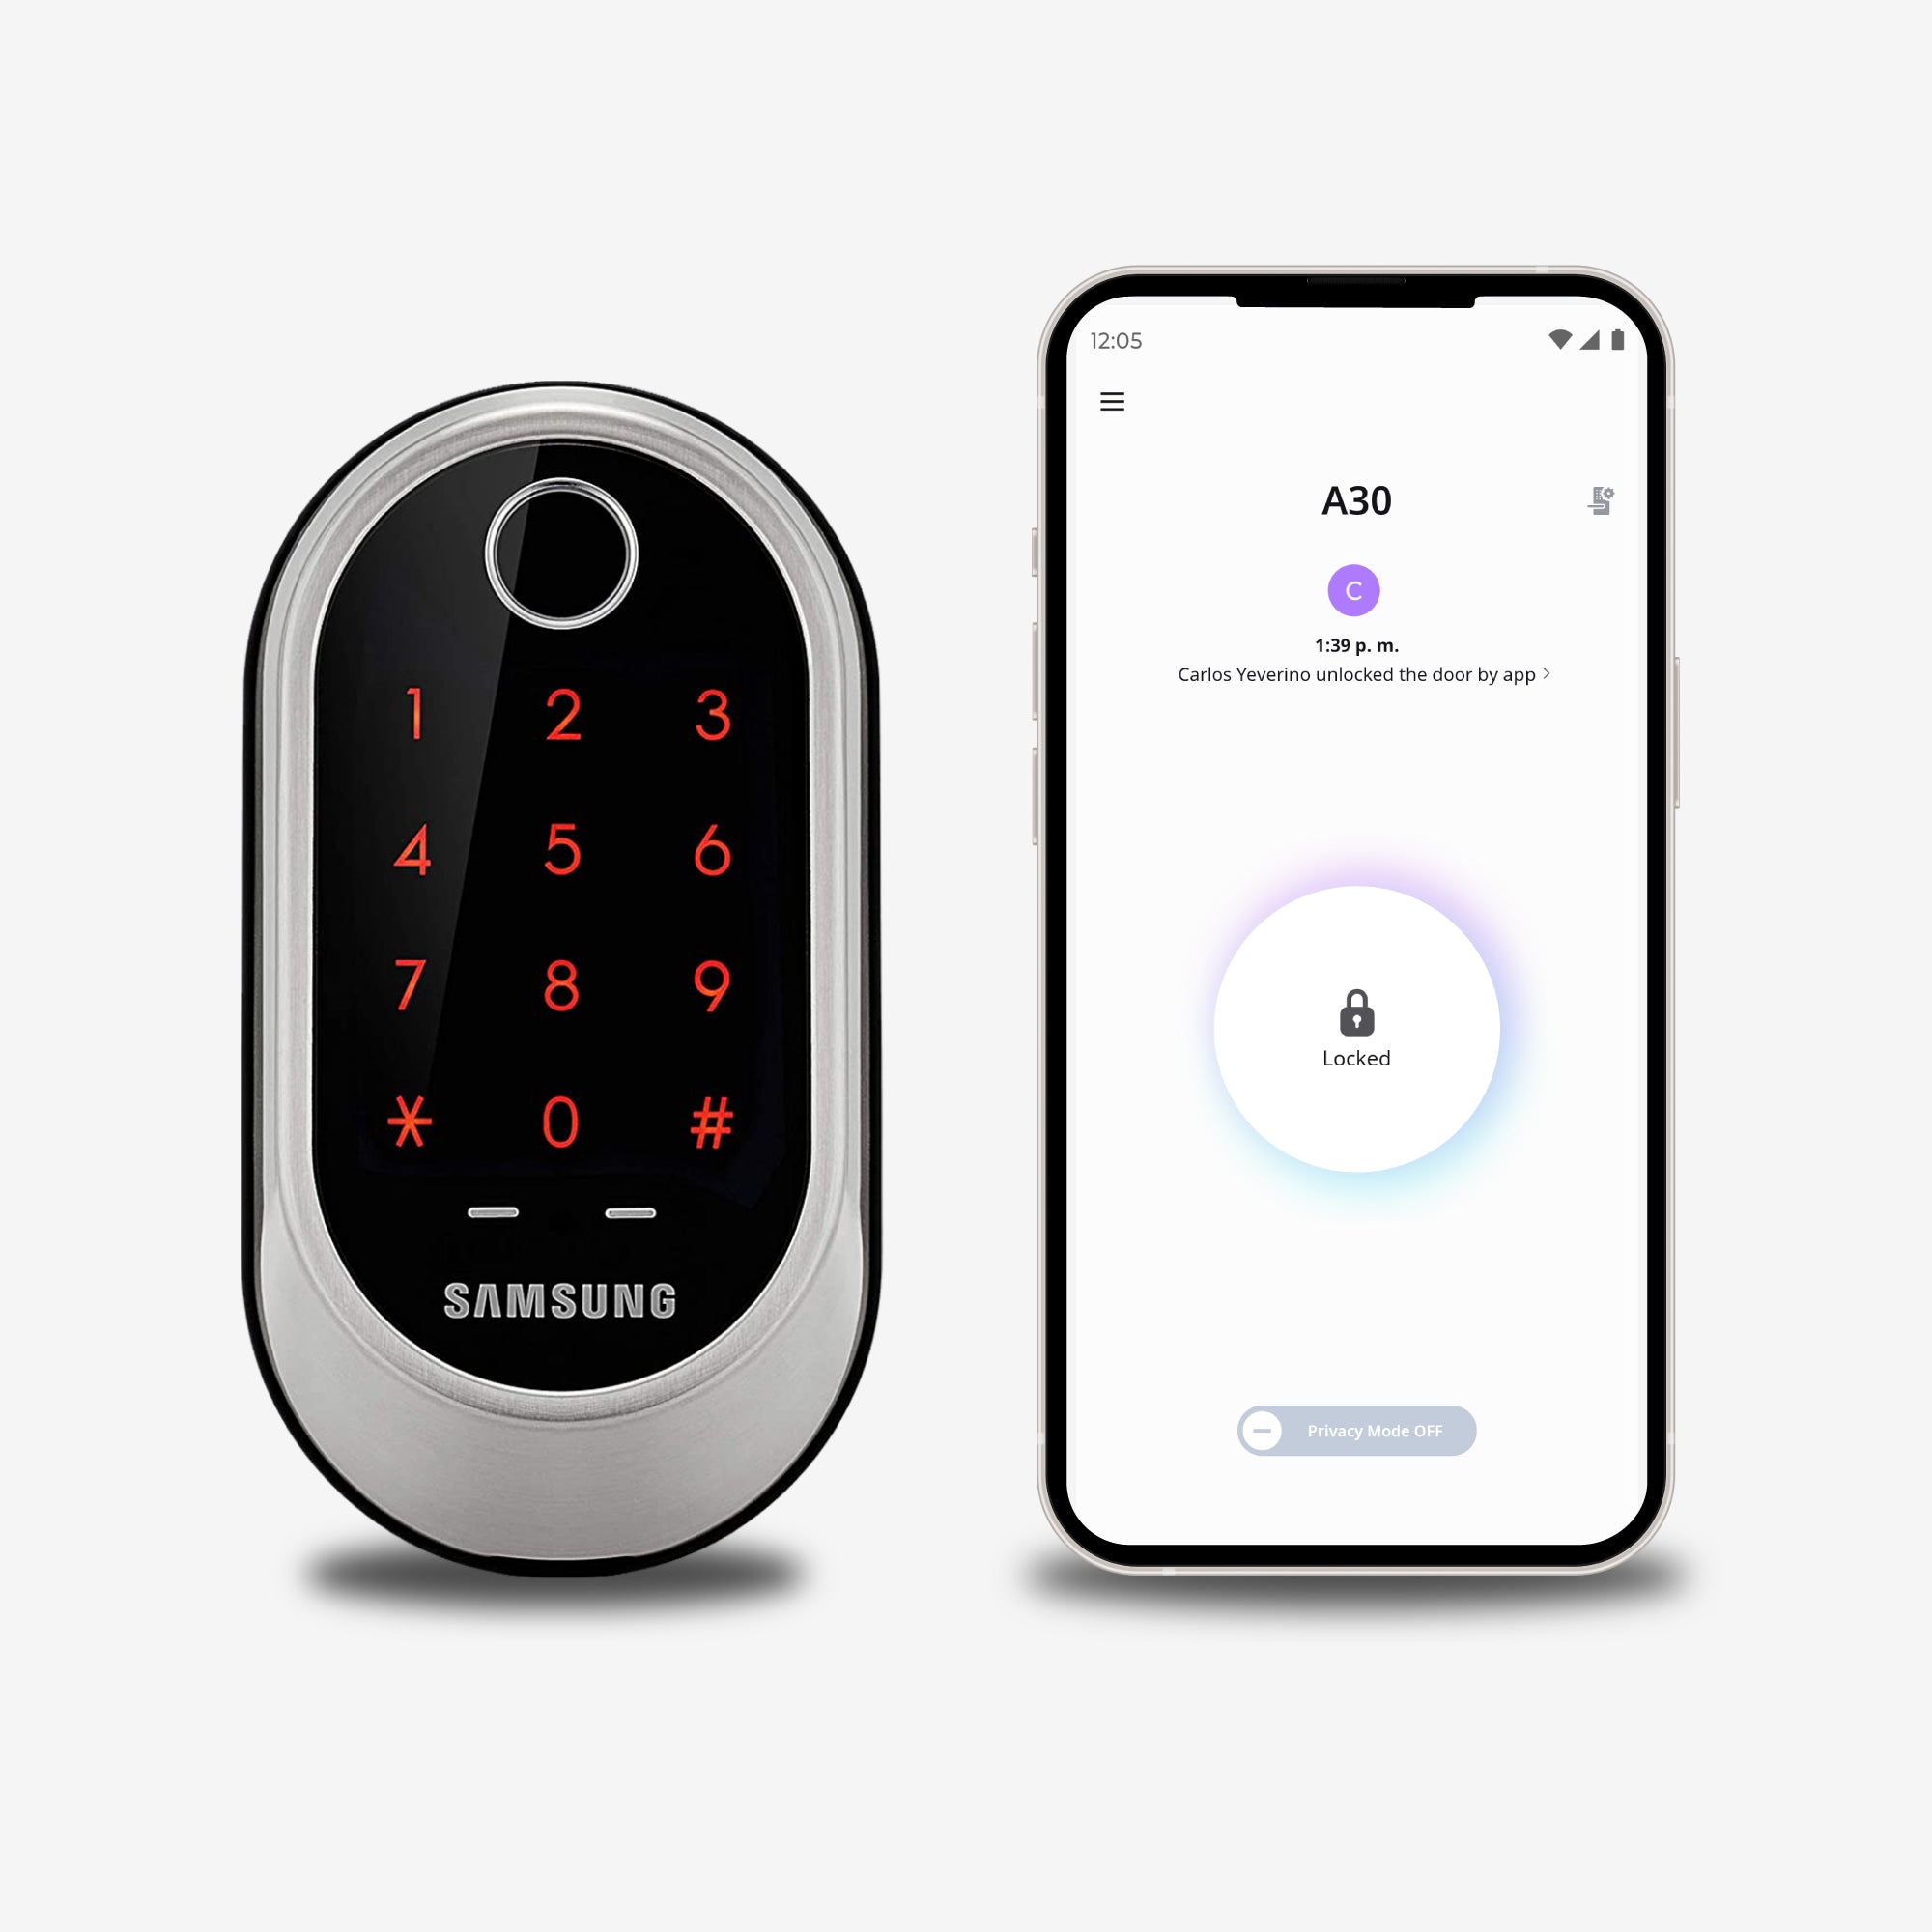 Cerradura Inteligente Samsung SHP-A30 y Smartphone con App Samsung Smart Lock para acceso remoto a la cerradura inteligente